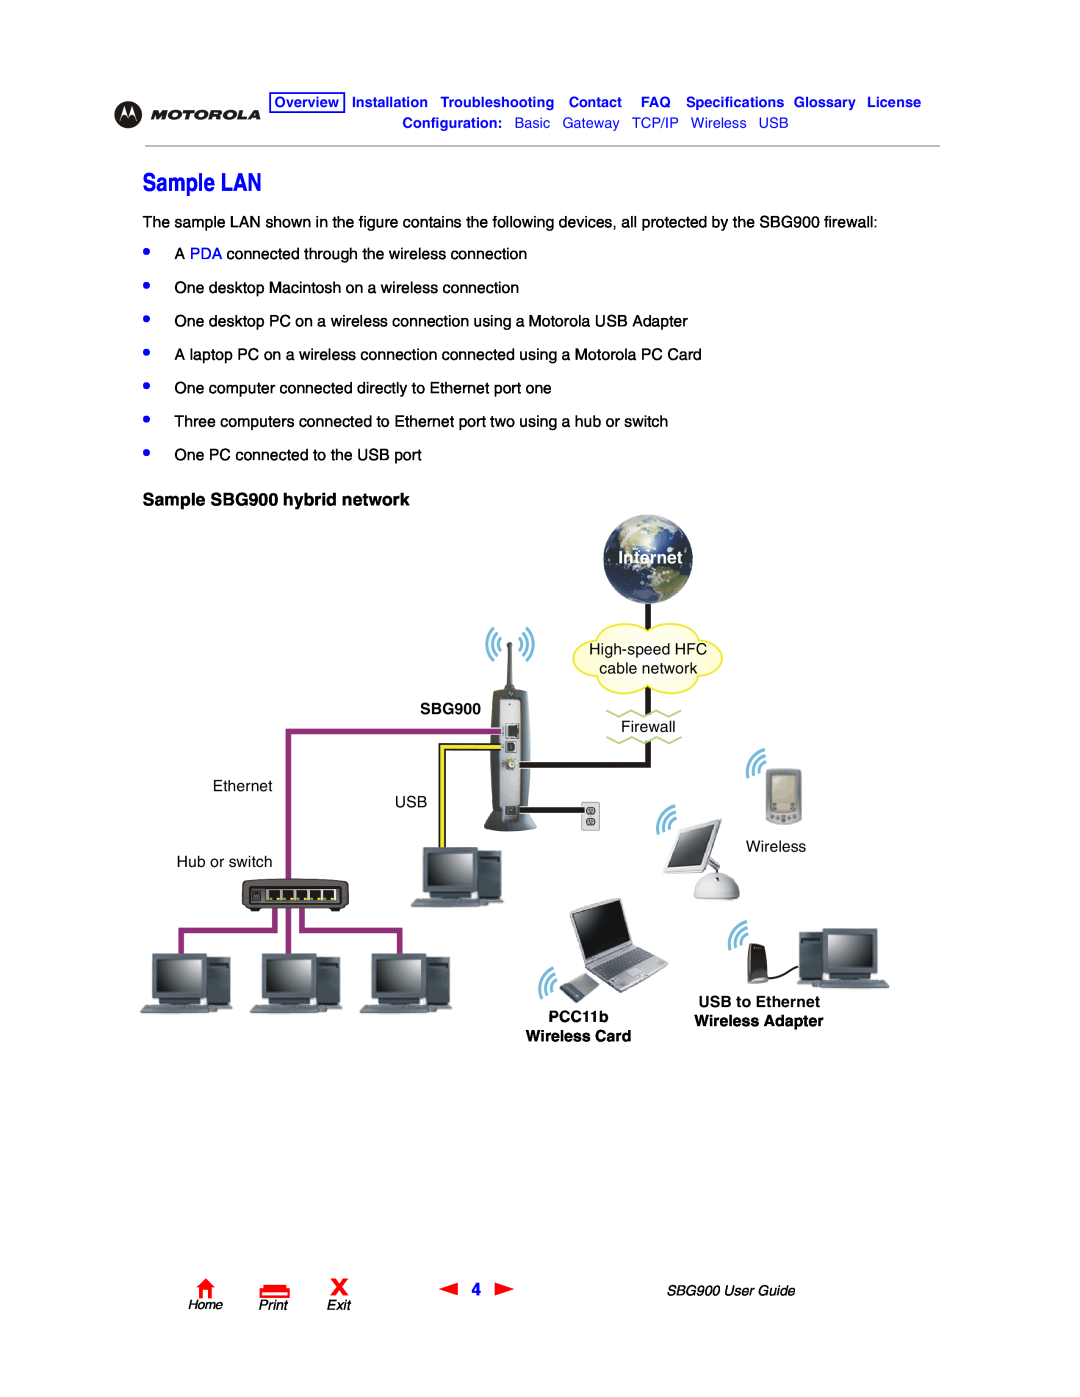 Motorola manual Sample LAN, Sample SBG900 hybrid network, PCC11b, USB to Ethernet, Internet 